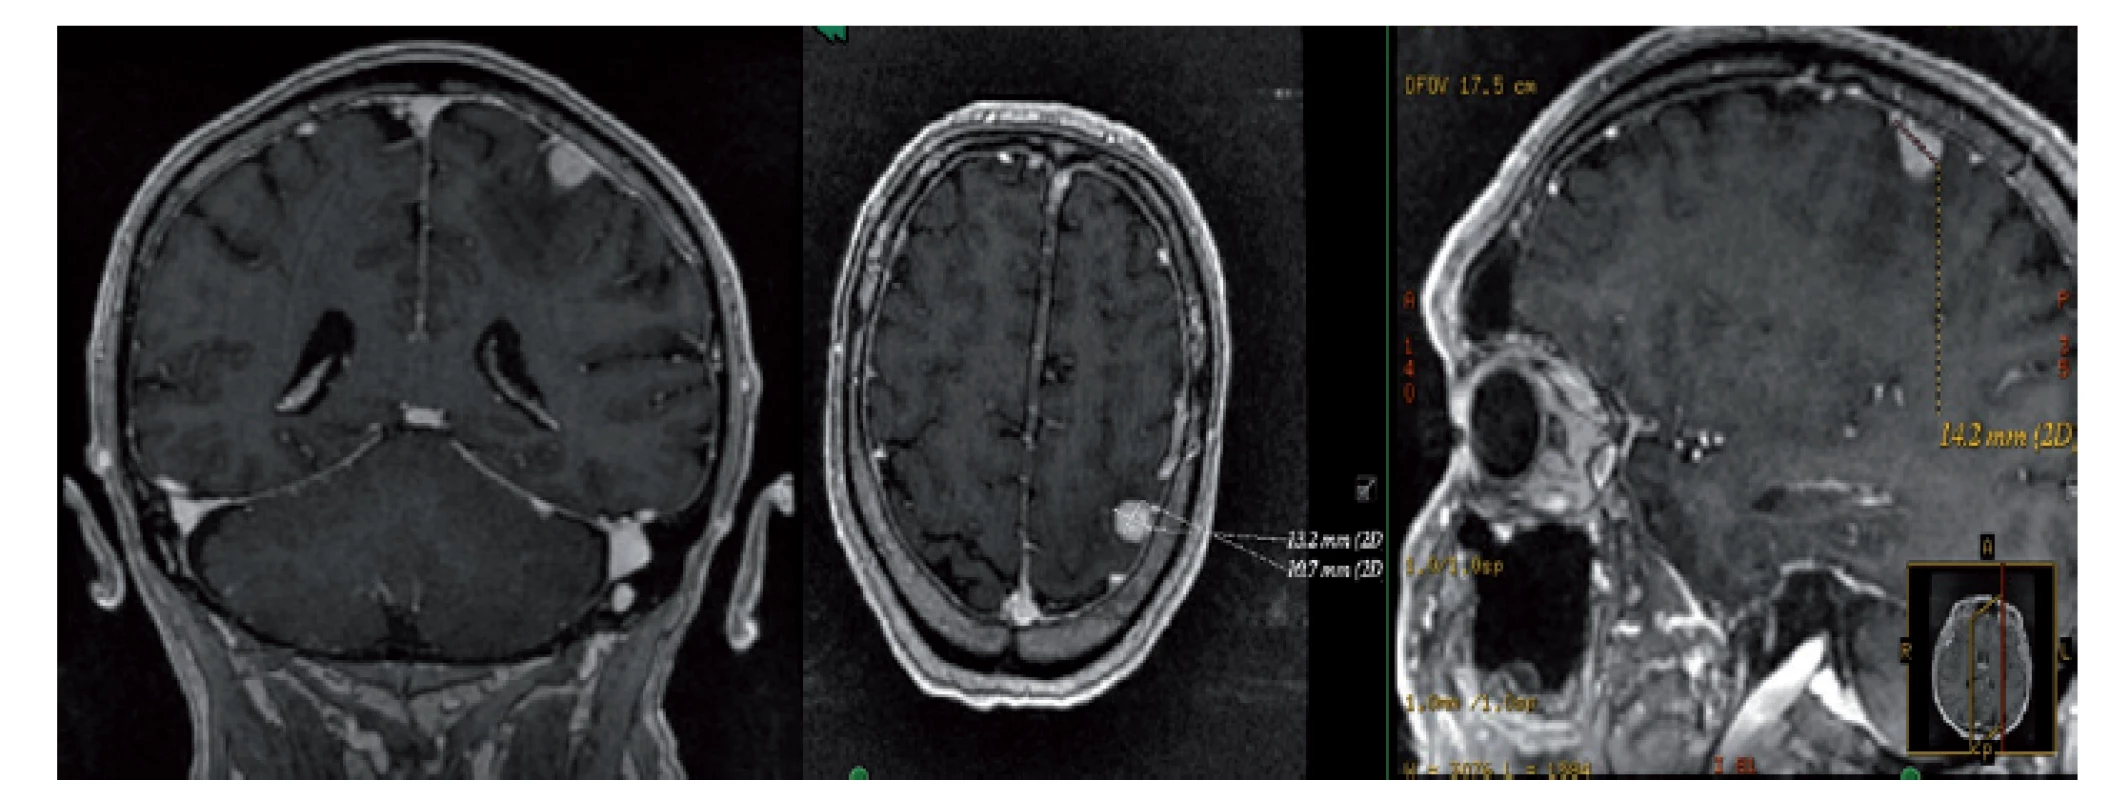 MRI mozku s nálezem supratentoriálně intraaxiálně
kortikálně v gyrus postcentralis vlevo solidního solitárního
ložiska charakteru metastázy